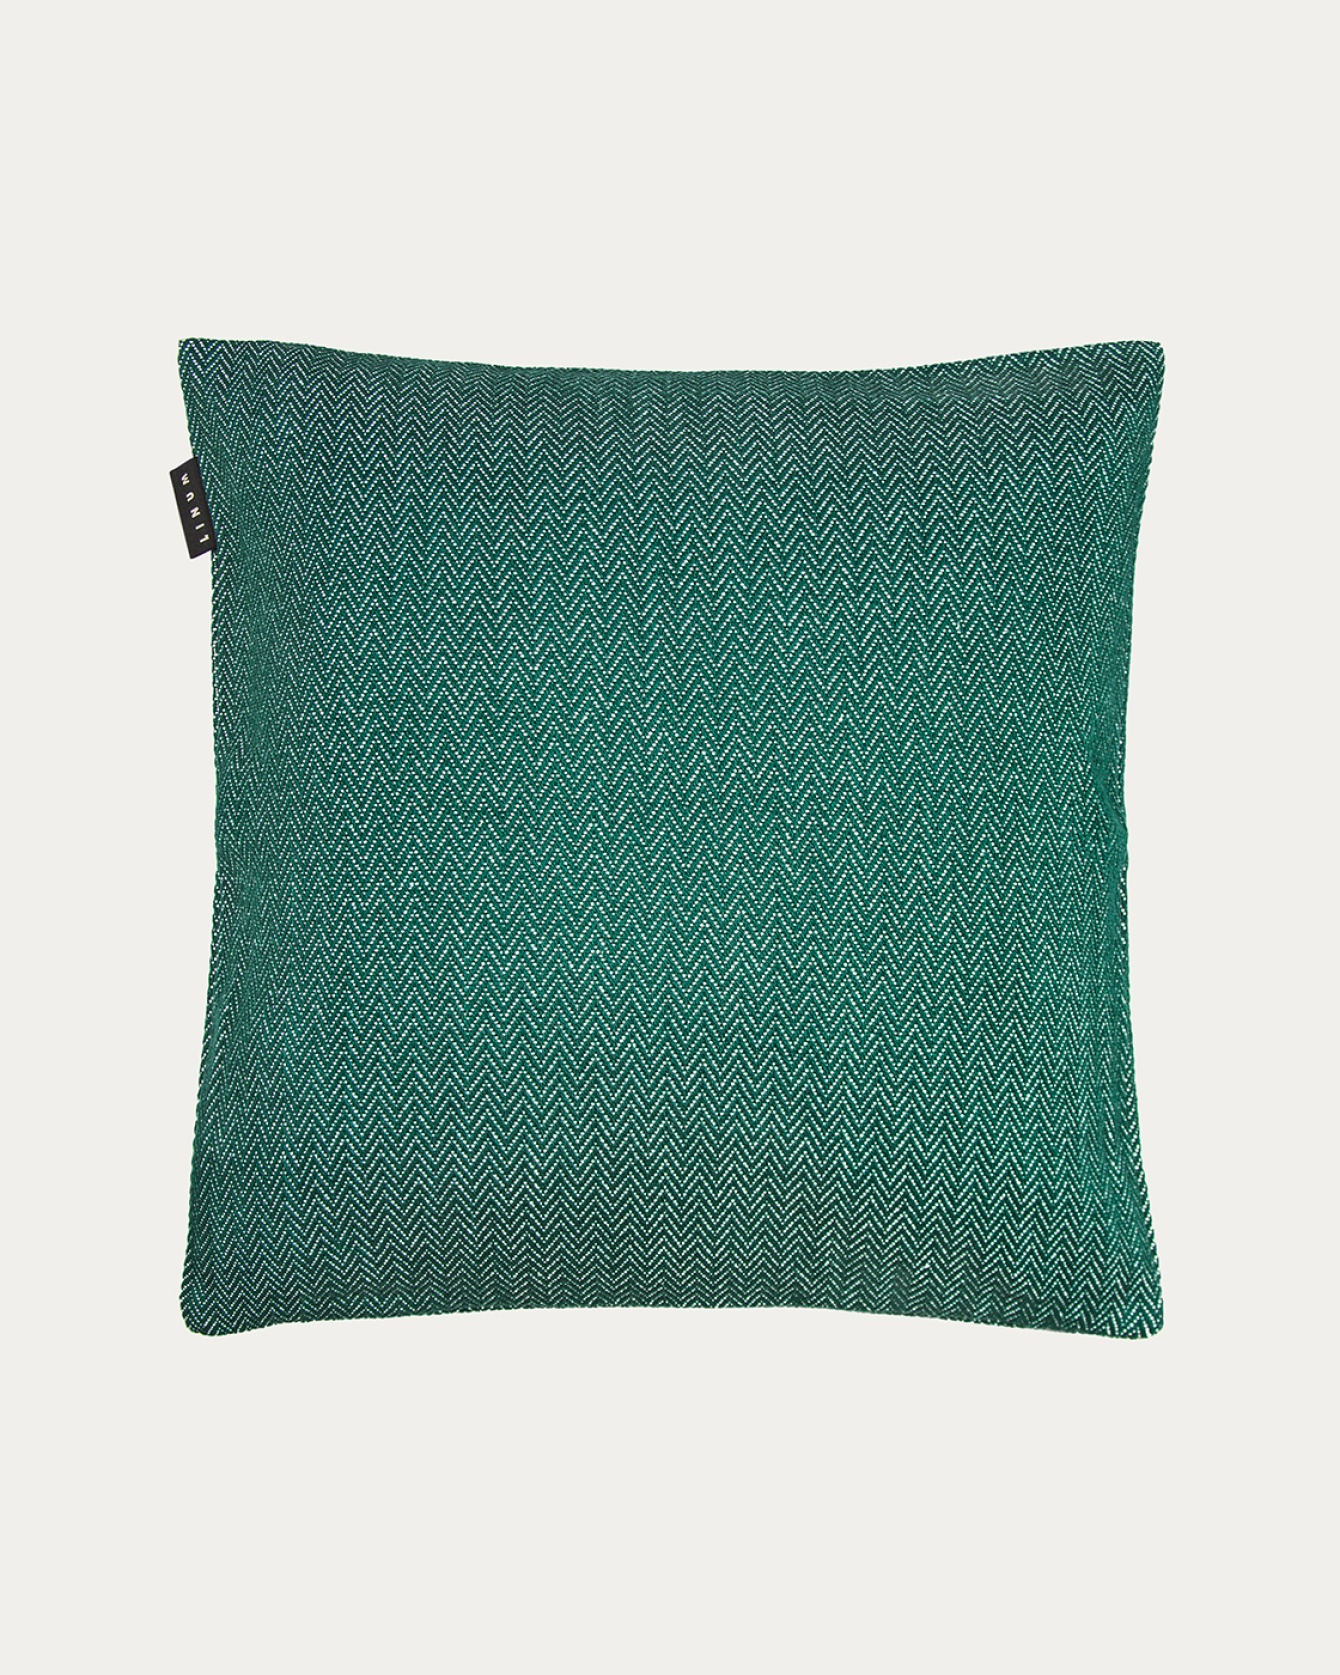 Image du produit housse de coussin SHEPARD vert émeraude intense en coton doux avec un motif à chevrons discret de LINUM DESIGN. Taille 50 x 50 cm.